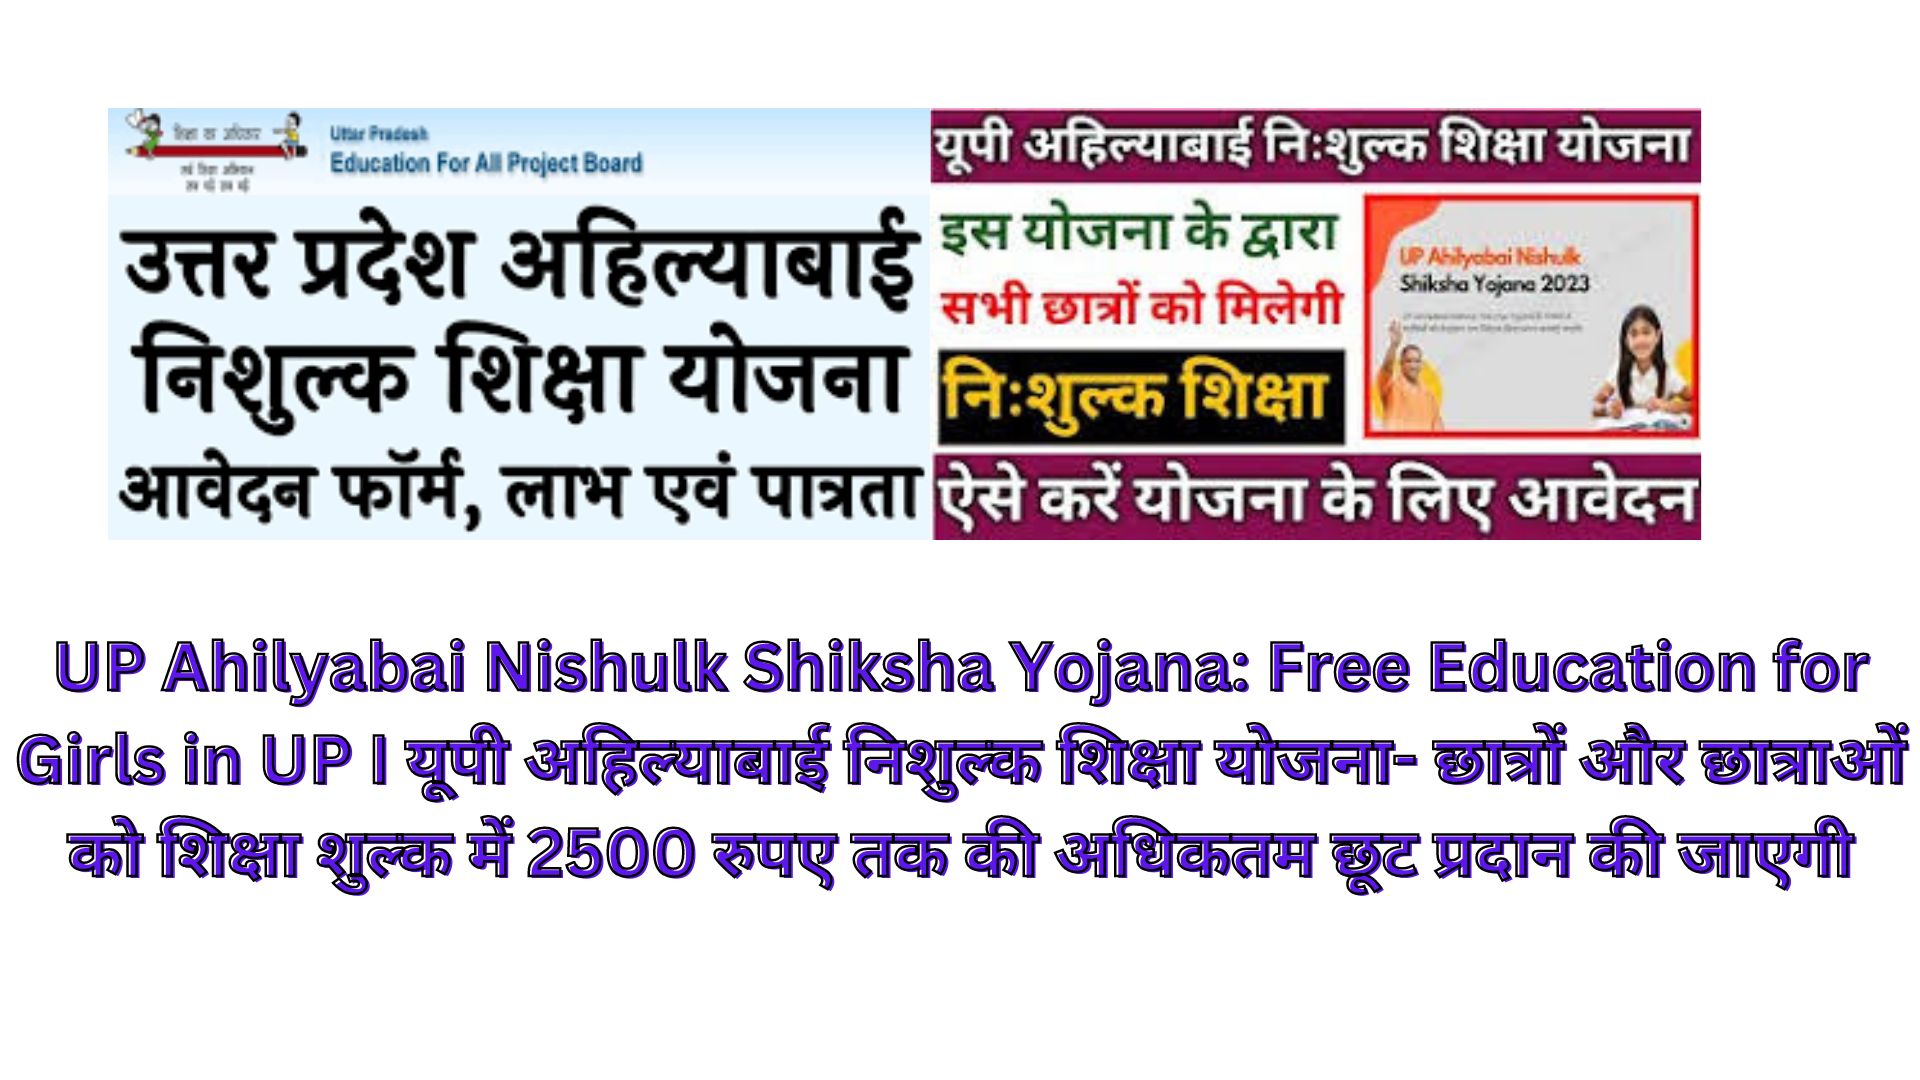 UP Ahilyabai Nishulk Shiksha Yojana: Free Education for Girls in UP I यूपी अहिल्याबाई निशुल्क शिक्षा योजना- छात्रों और छात्राओं को शिक्षा शुल्क में 2500 रुपए तक की अधिकतम छूट प्रदान की जाएगी